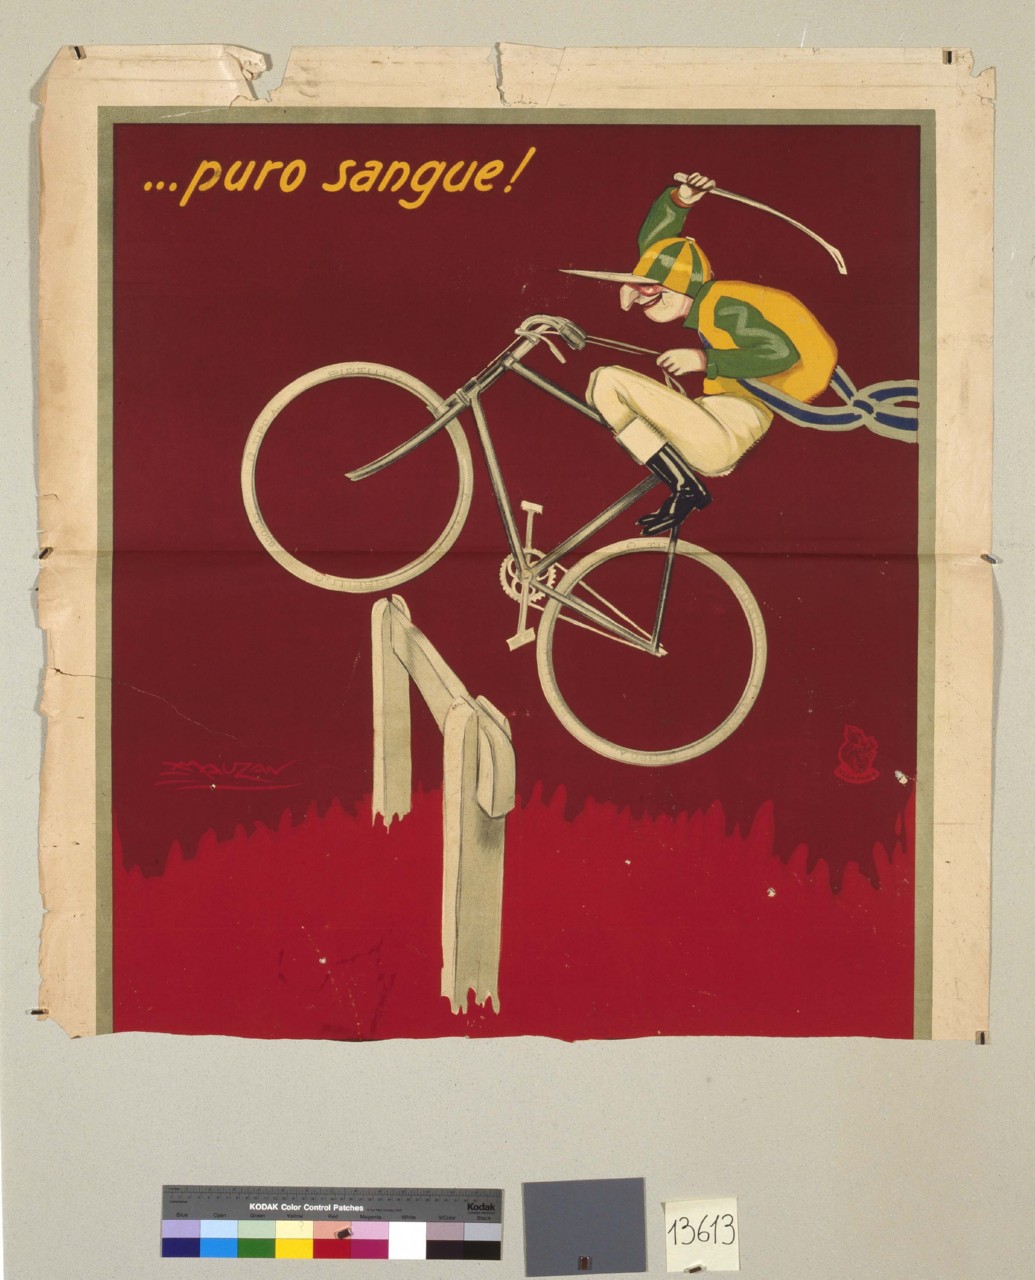 fantino in bicicletta salta un ostacolo (manifesto) di Mauzan Achille Luciano, MAGA (sec. XX)